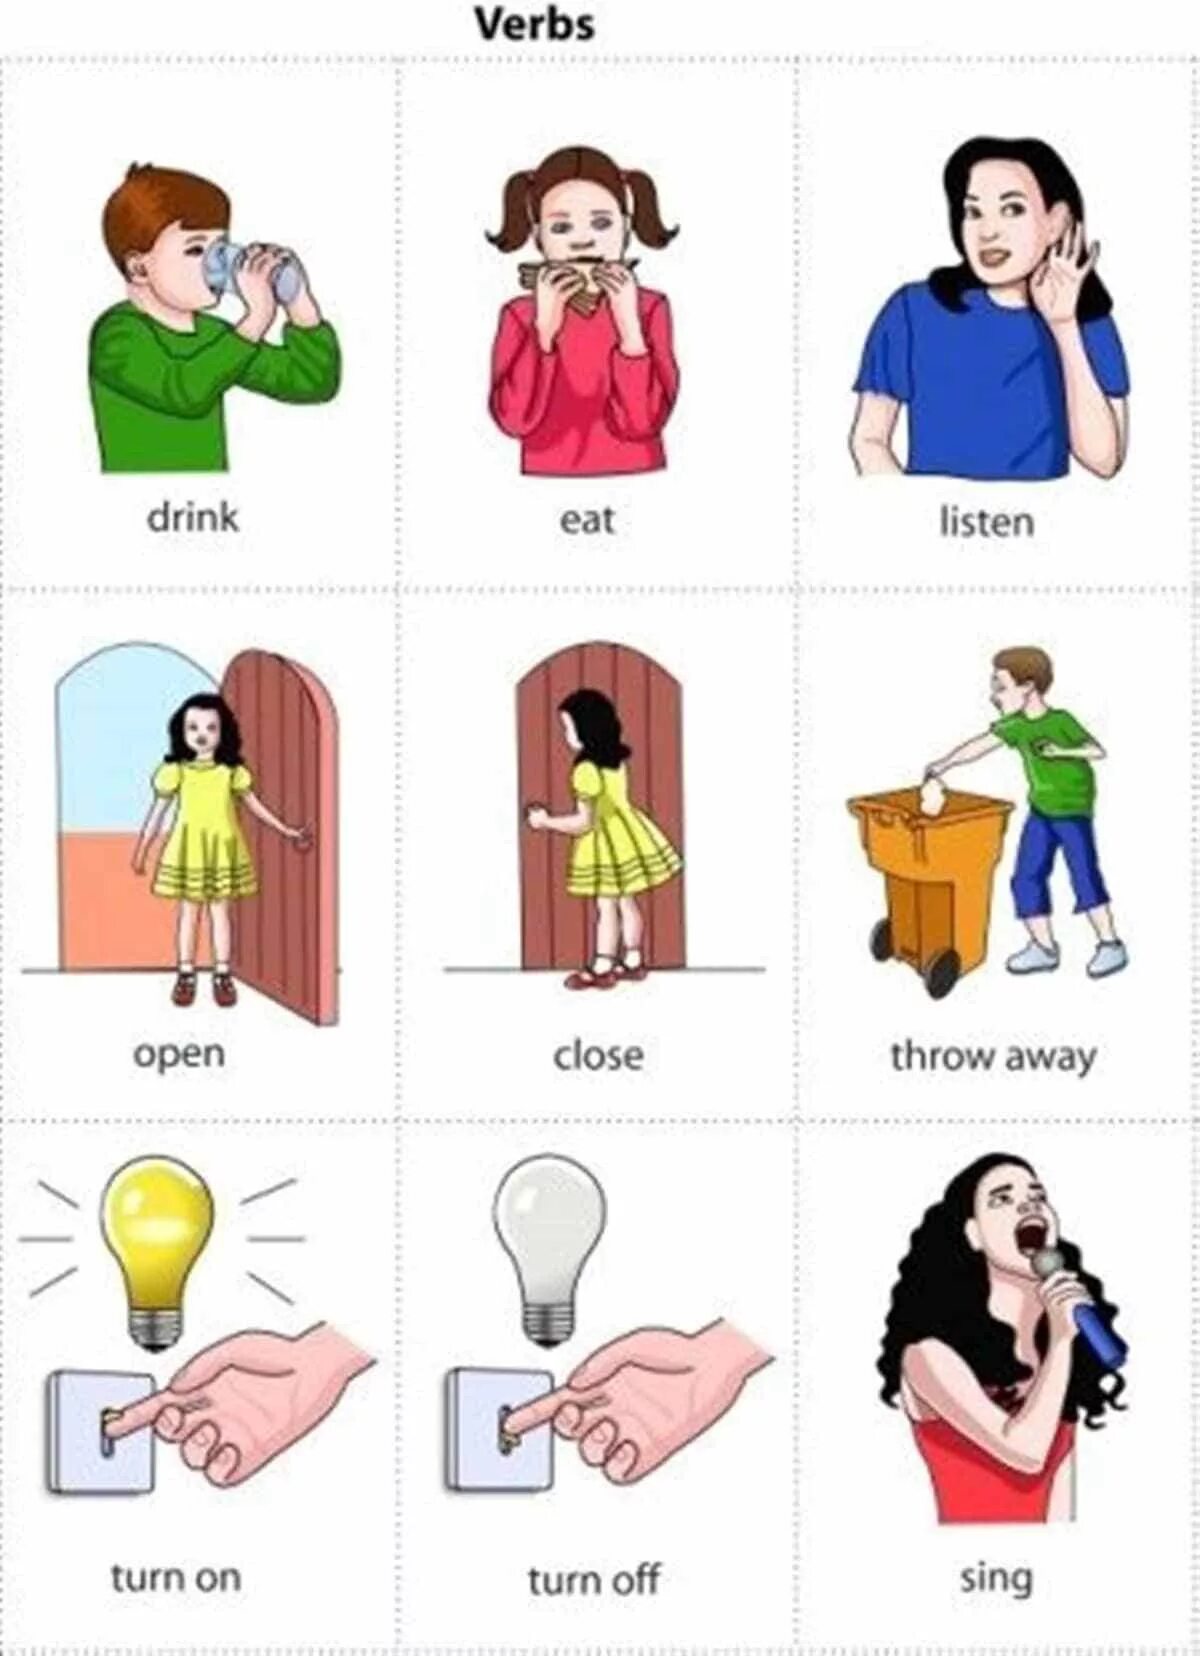 Английский для детей карточки с глаголами. Глаголы в английском языке для детей. Английские глаголы в картинках для детей. Глаголы для детей в картинках. Common actions